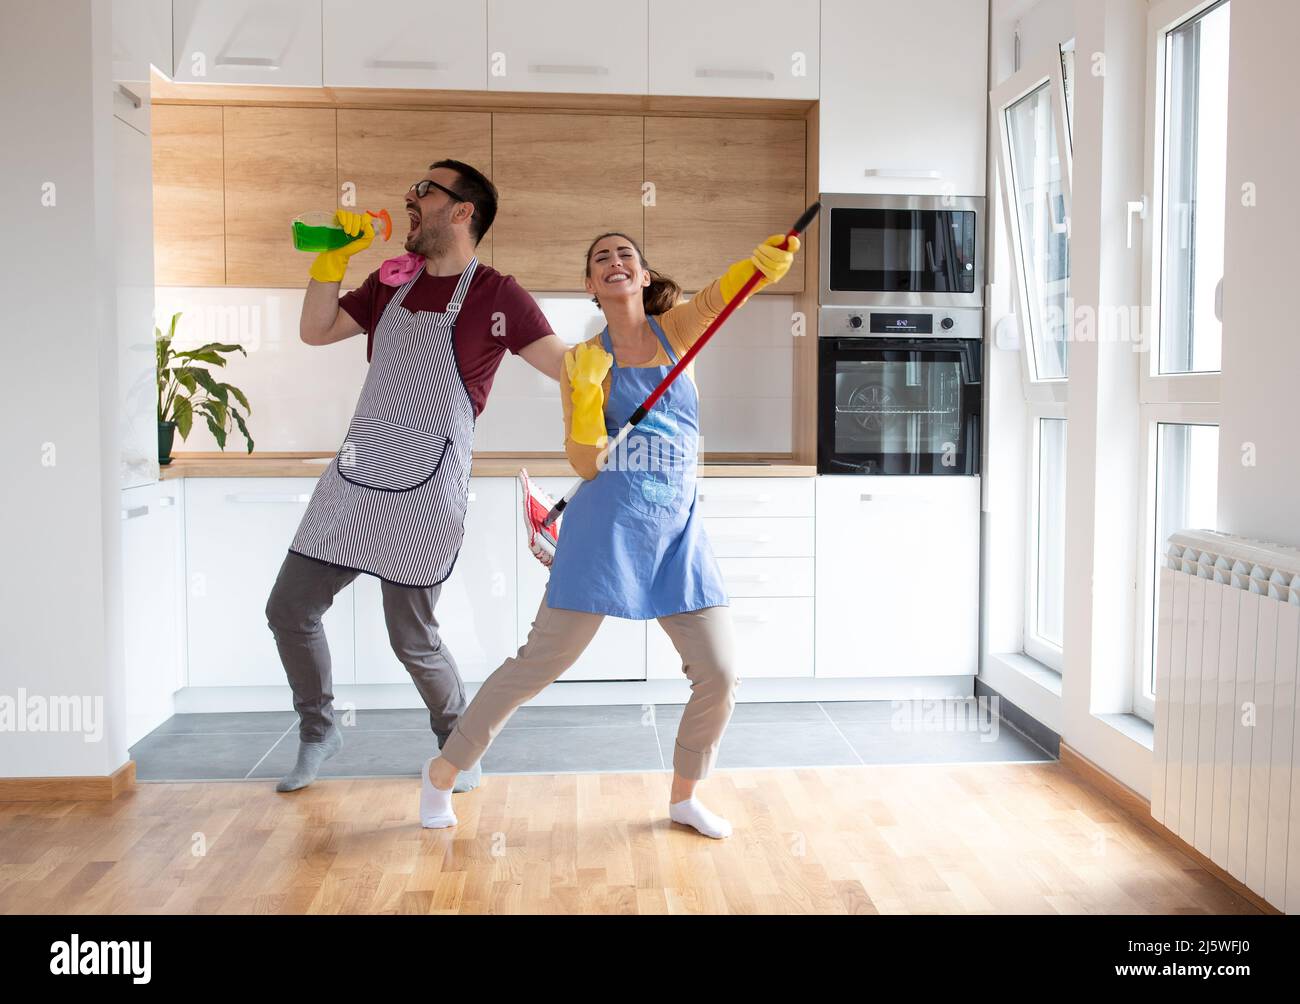 Fröhliches Paar tanzt und singt, während sie gemeinsam mit Reinigungsmitteln arbeiten, während sie Rockstars mit Sprühflasche und Mopp imitieren. Stockfoto